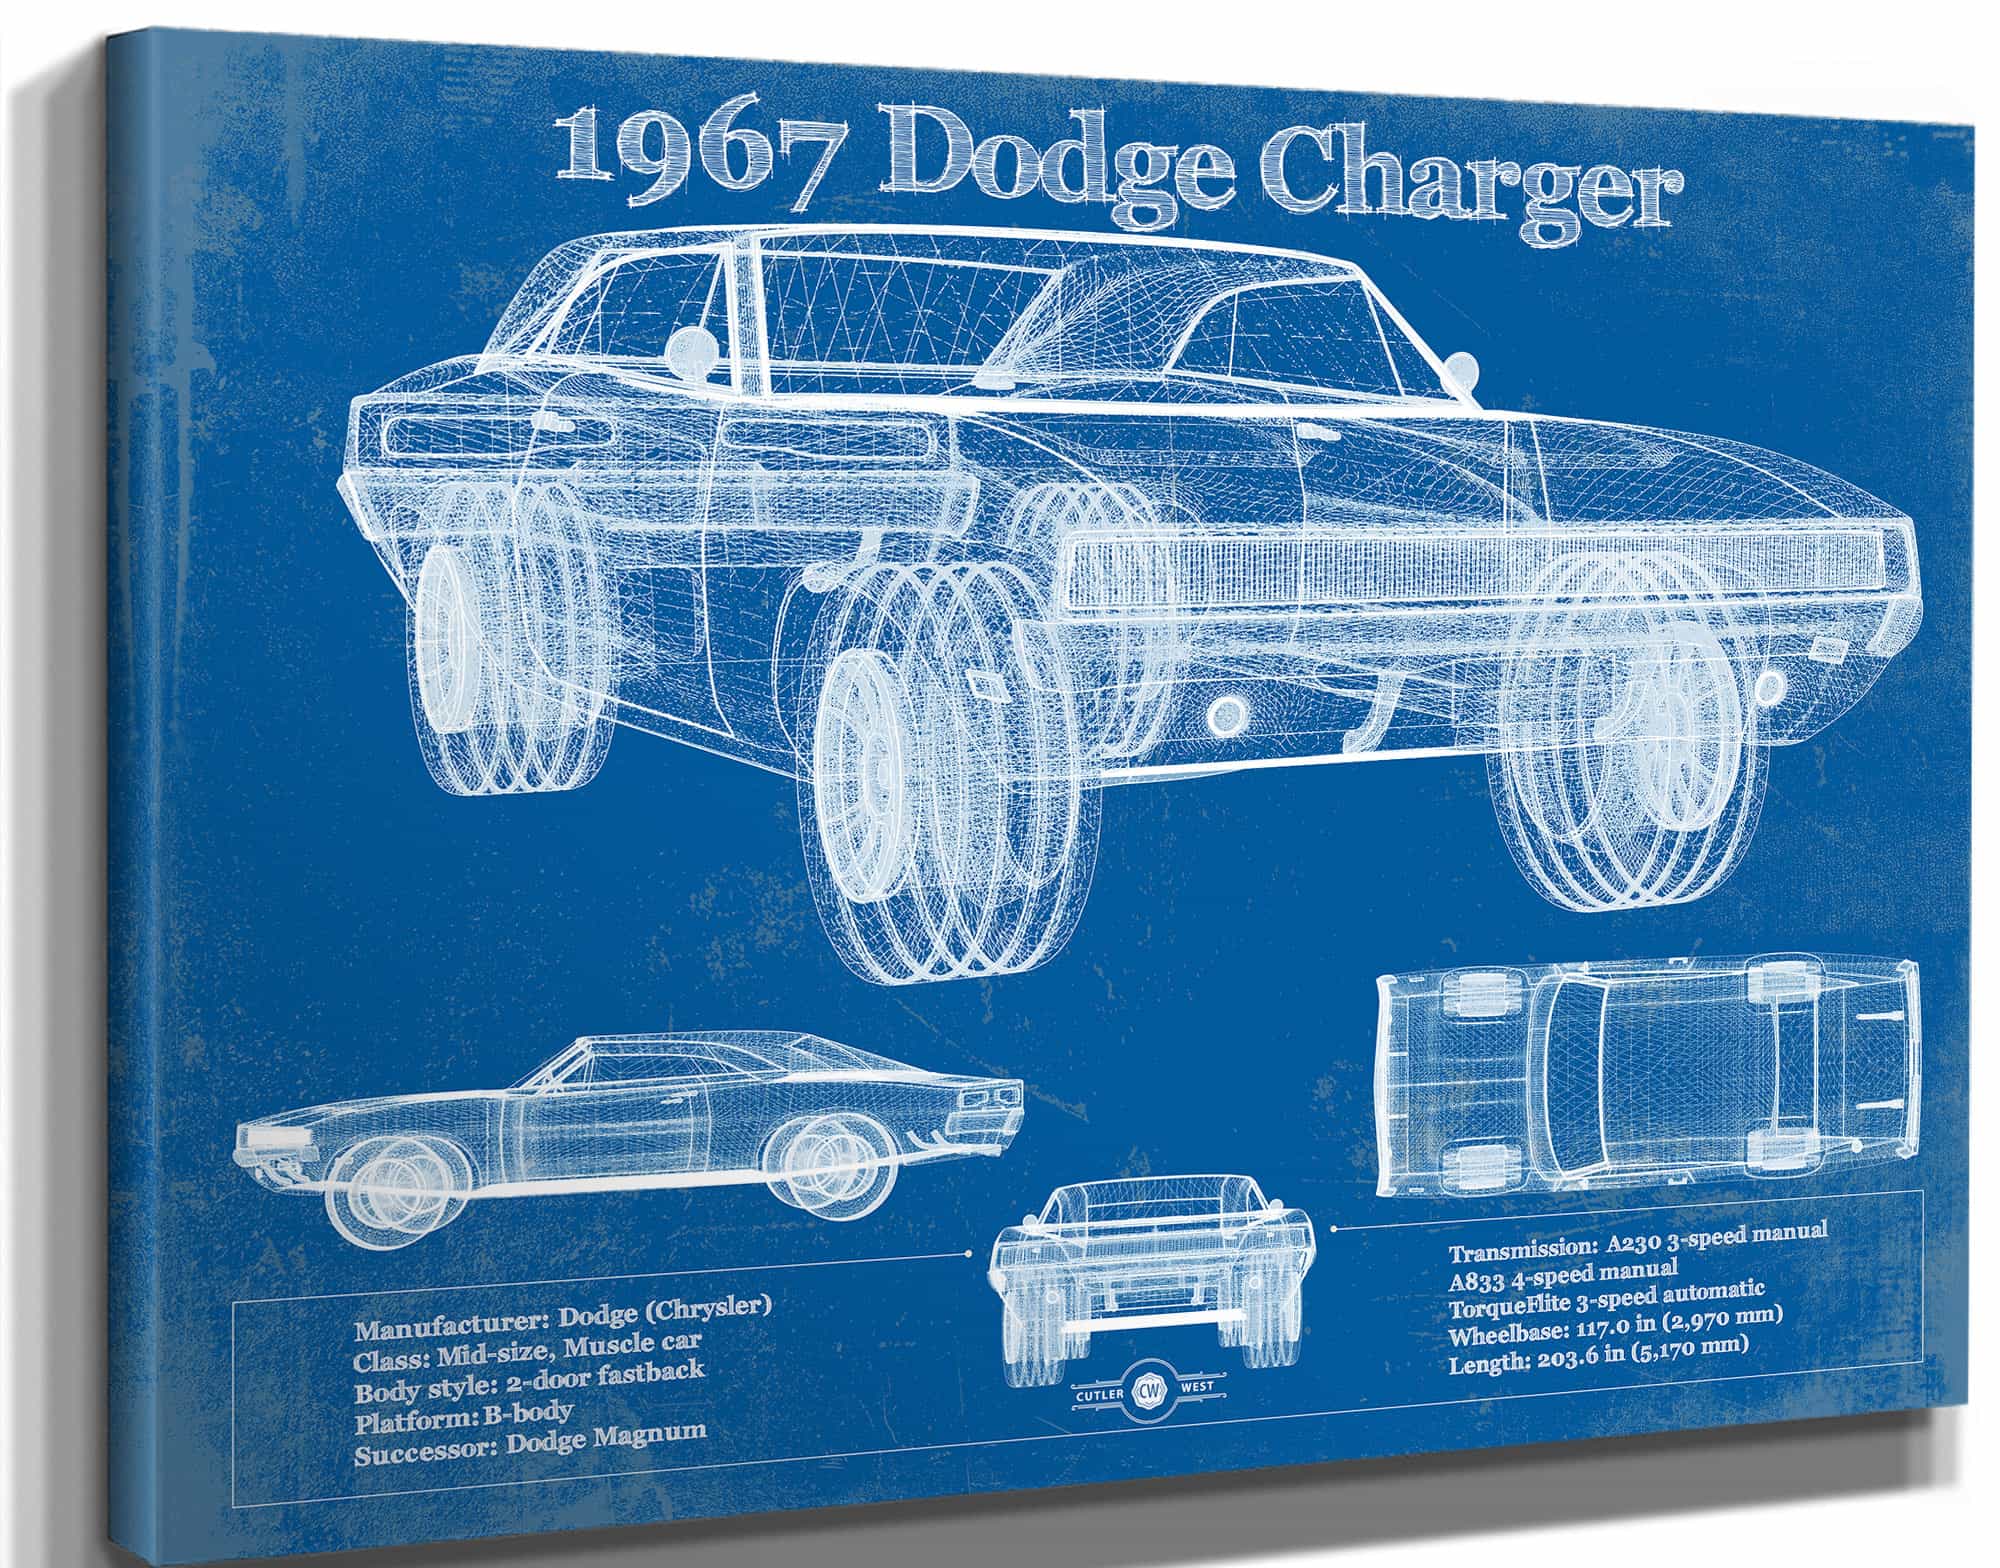 1967 Dodge Charger Vintage Blueprint Auto Print